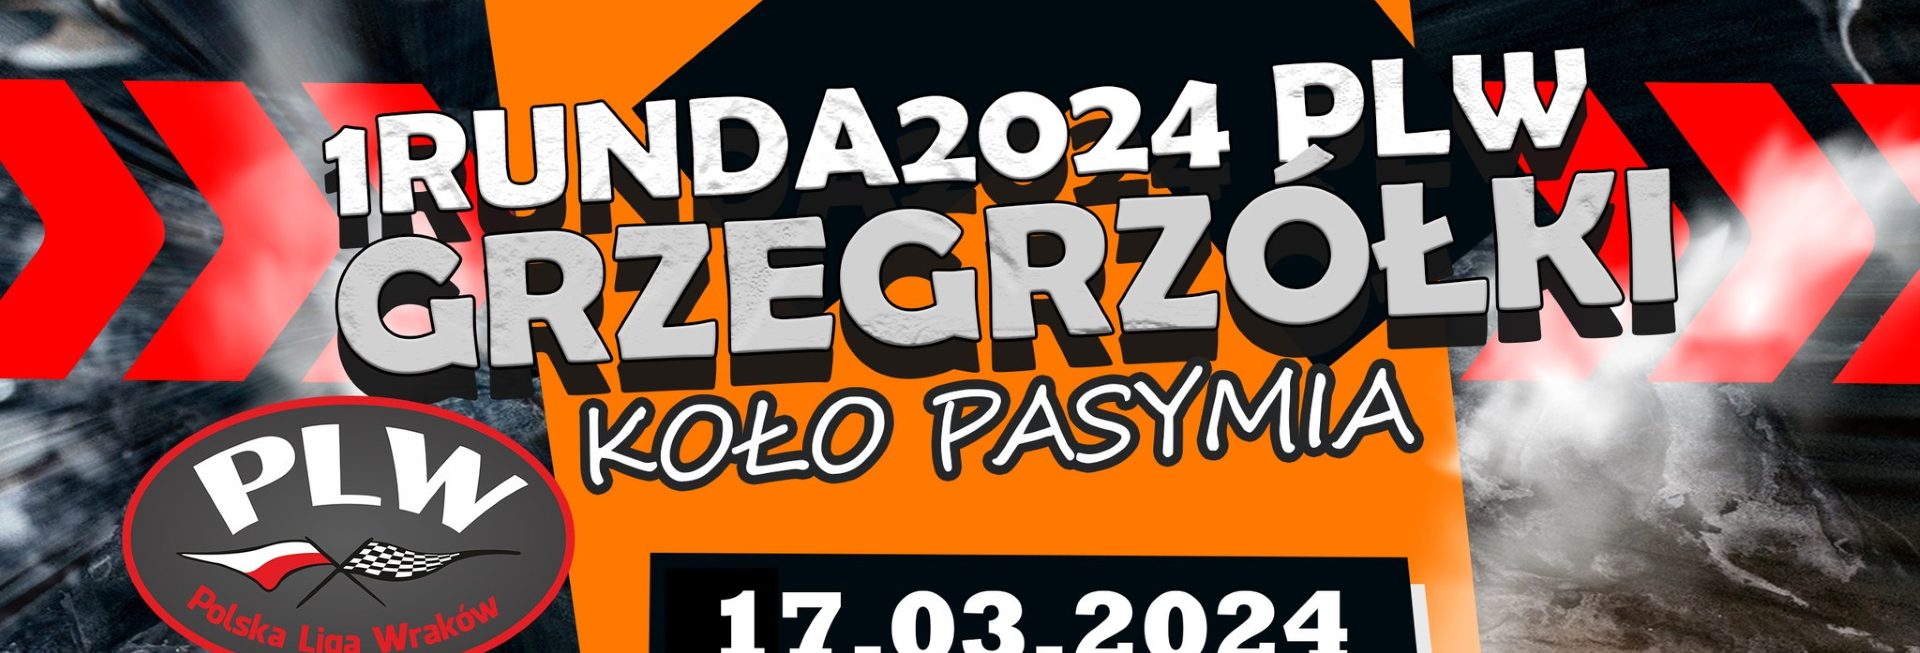 Plakat zapraszający w niedzielę 17 marca 2024 r. do miejscowości Grzegrzółki k. Pasymia na 1 Rundę Rajdu Polskiej Liga Wraków Grzegrzółki k. Pasymia 2024.